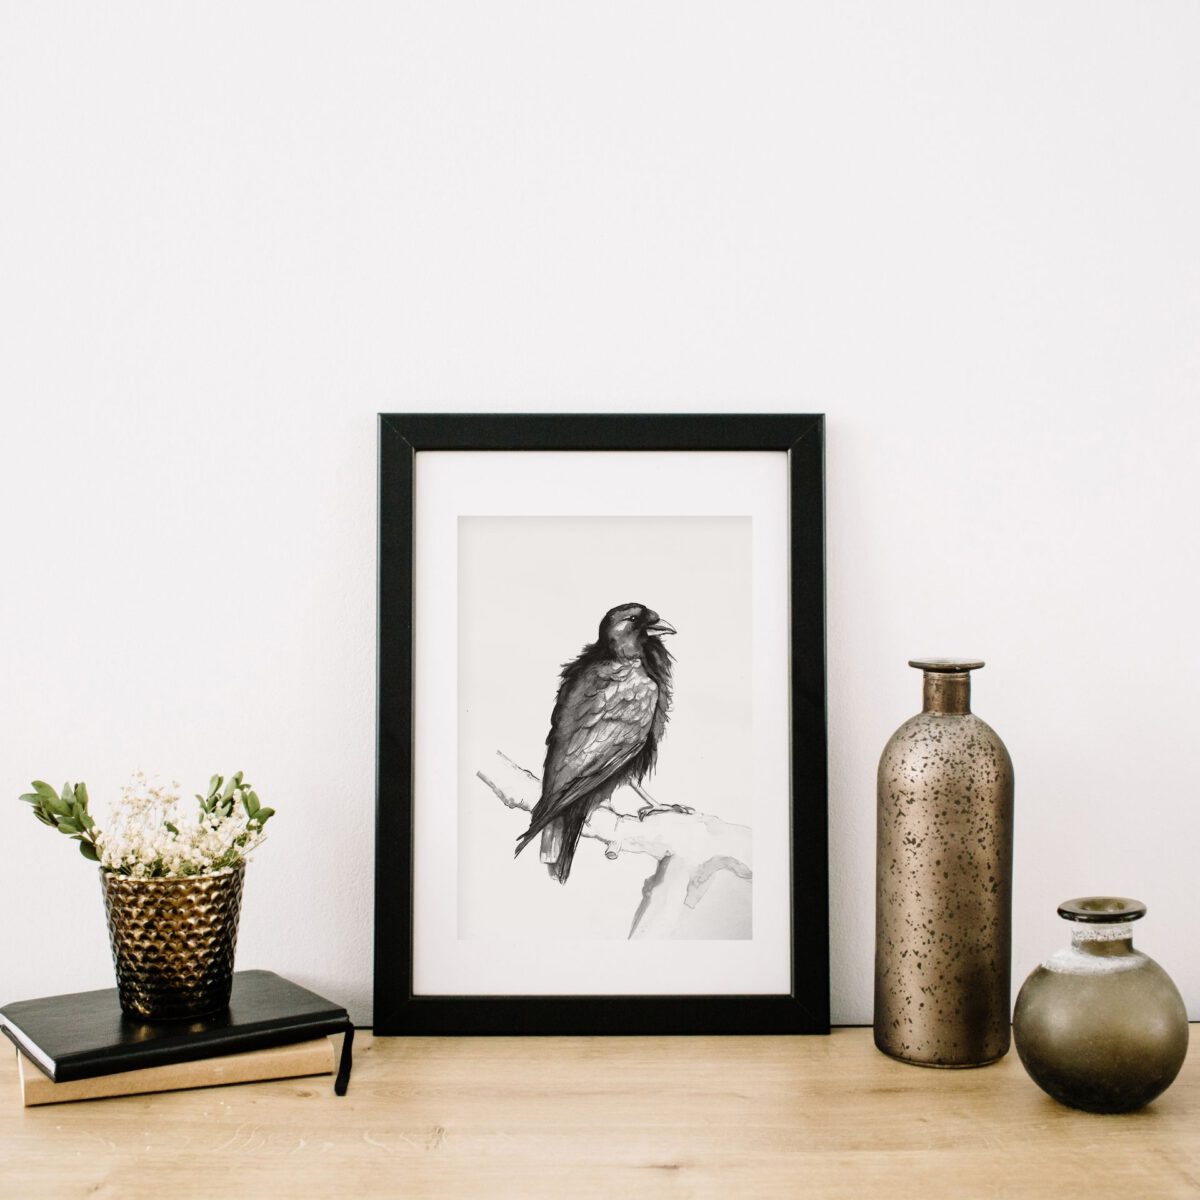 ציור עורב ציורי ציפורים ציור שחור לבן אמנות אמנות ישראלית ציורים ציפורים גלריה לאמנות אנה רידס anna radis